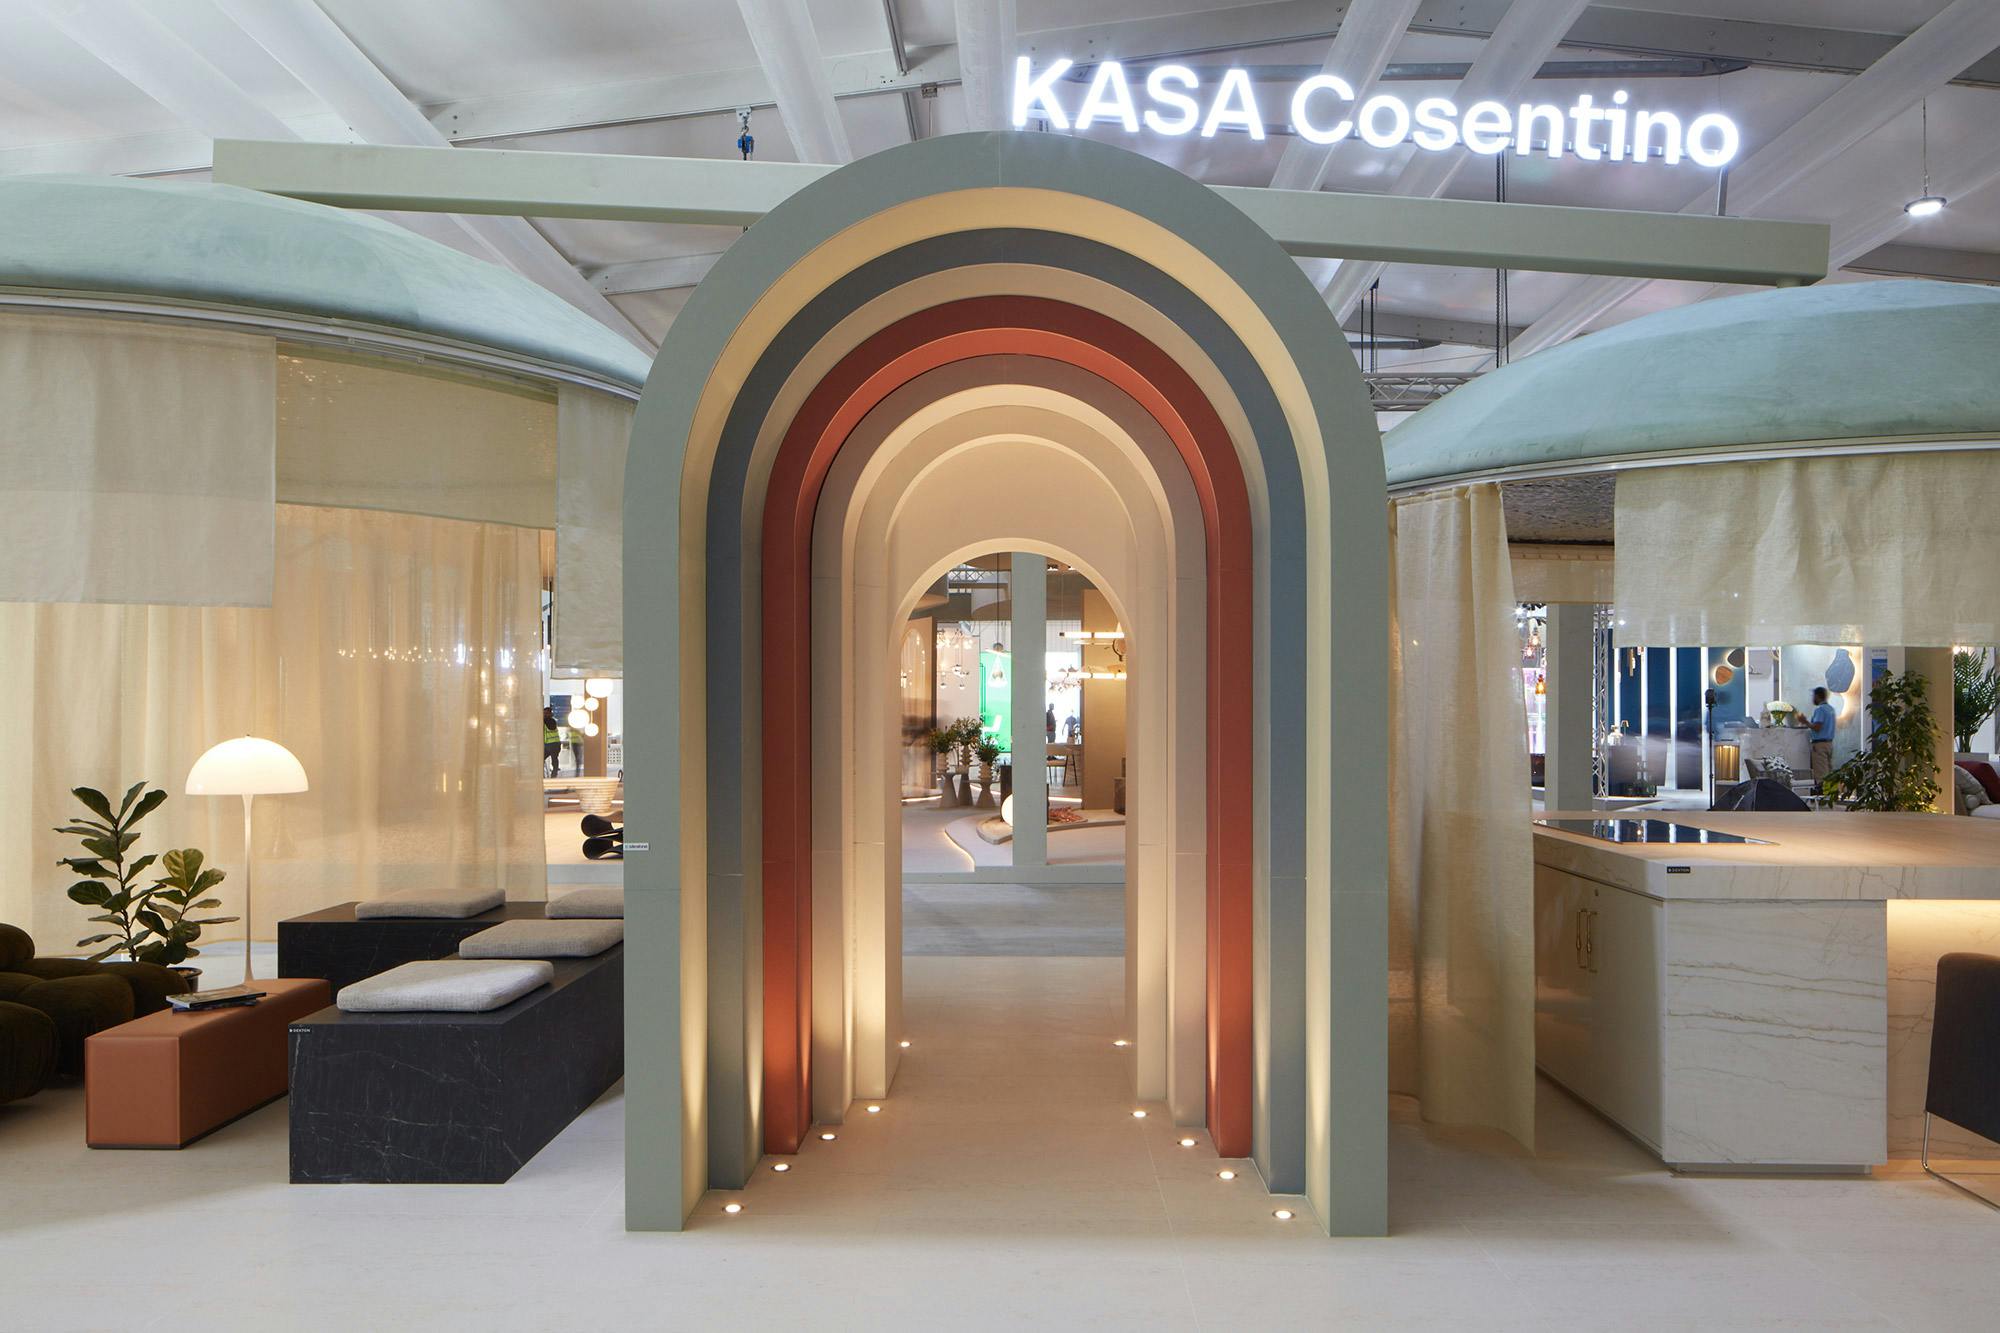 Image number 32 of the current section of {{KASA Cosentino en la feria Downtown Design 2022 puso en valor el diseño responsable y la sostenibilidad}} in Cosentino Australia